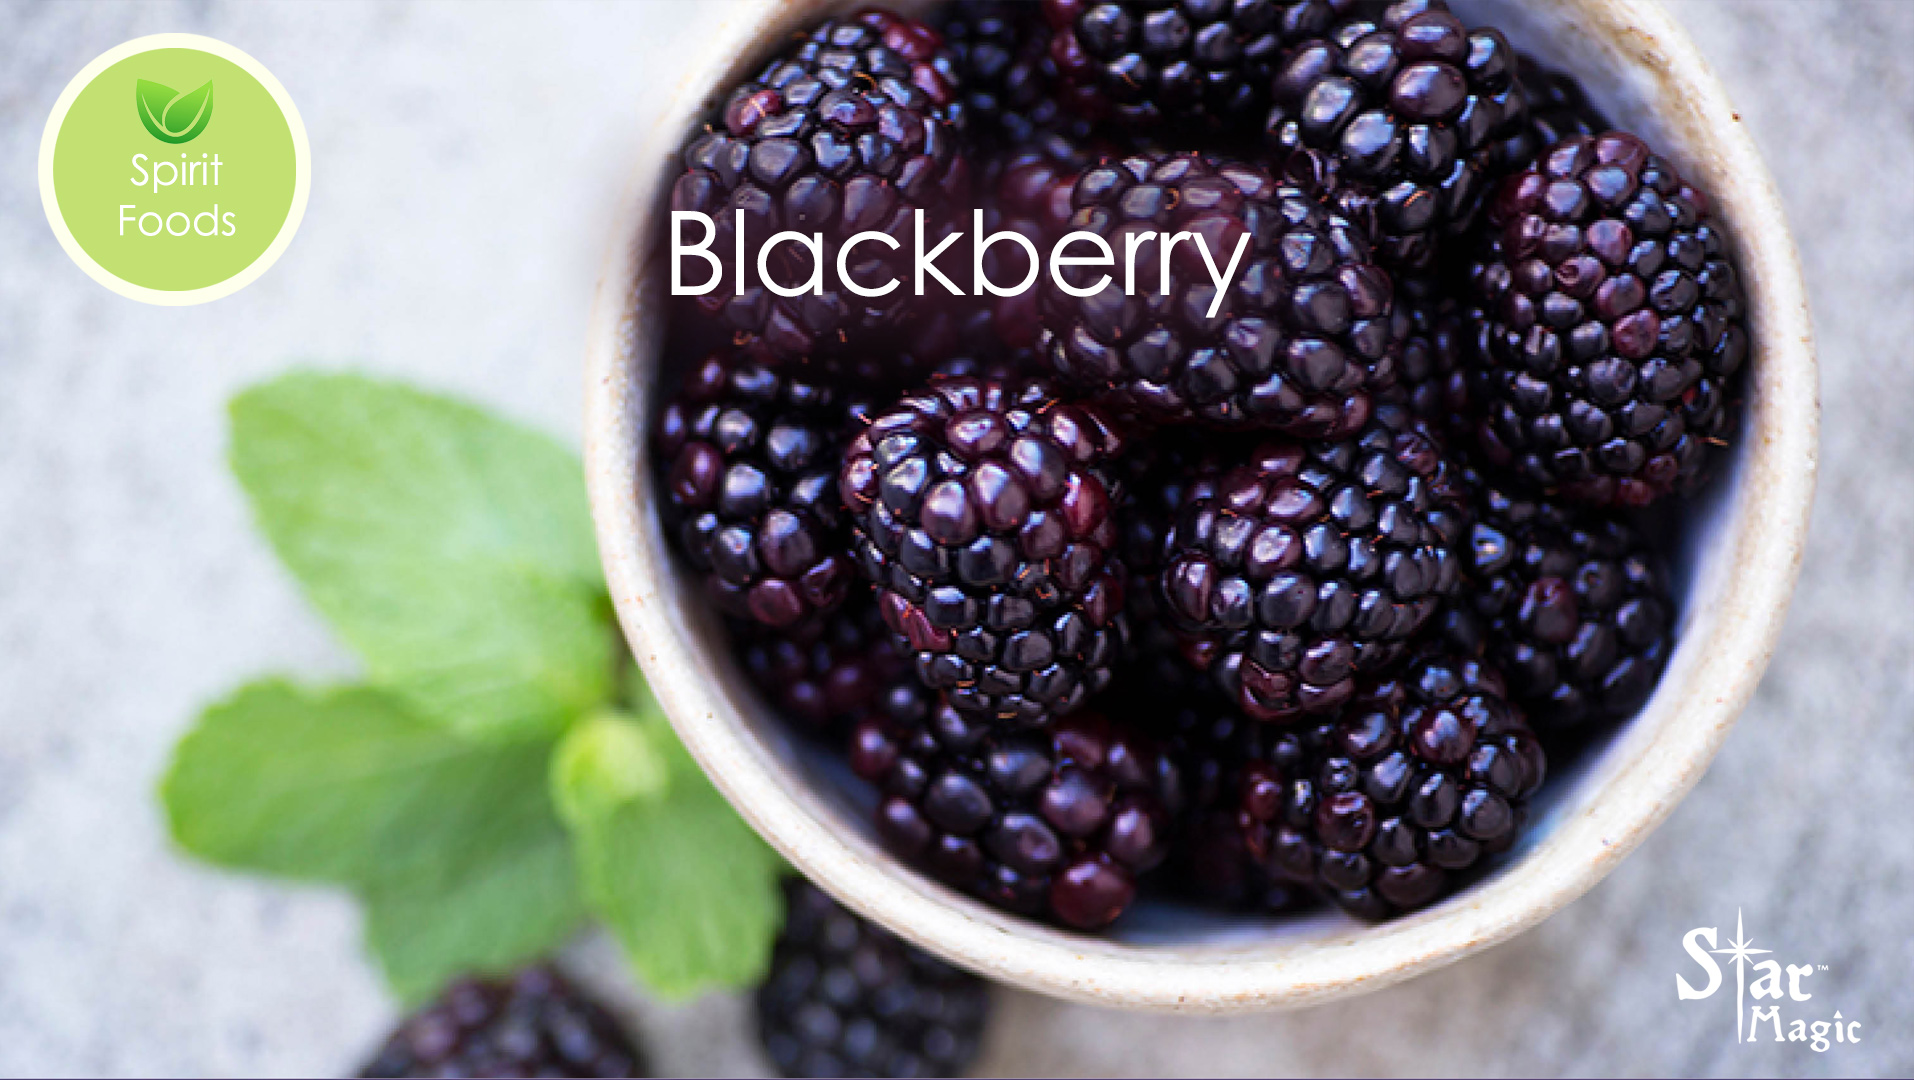 Spirit Food – Blackberries